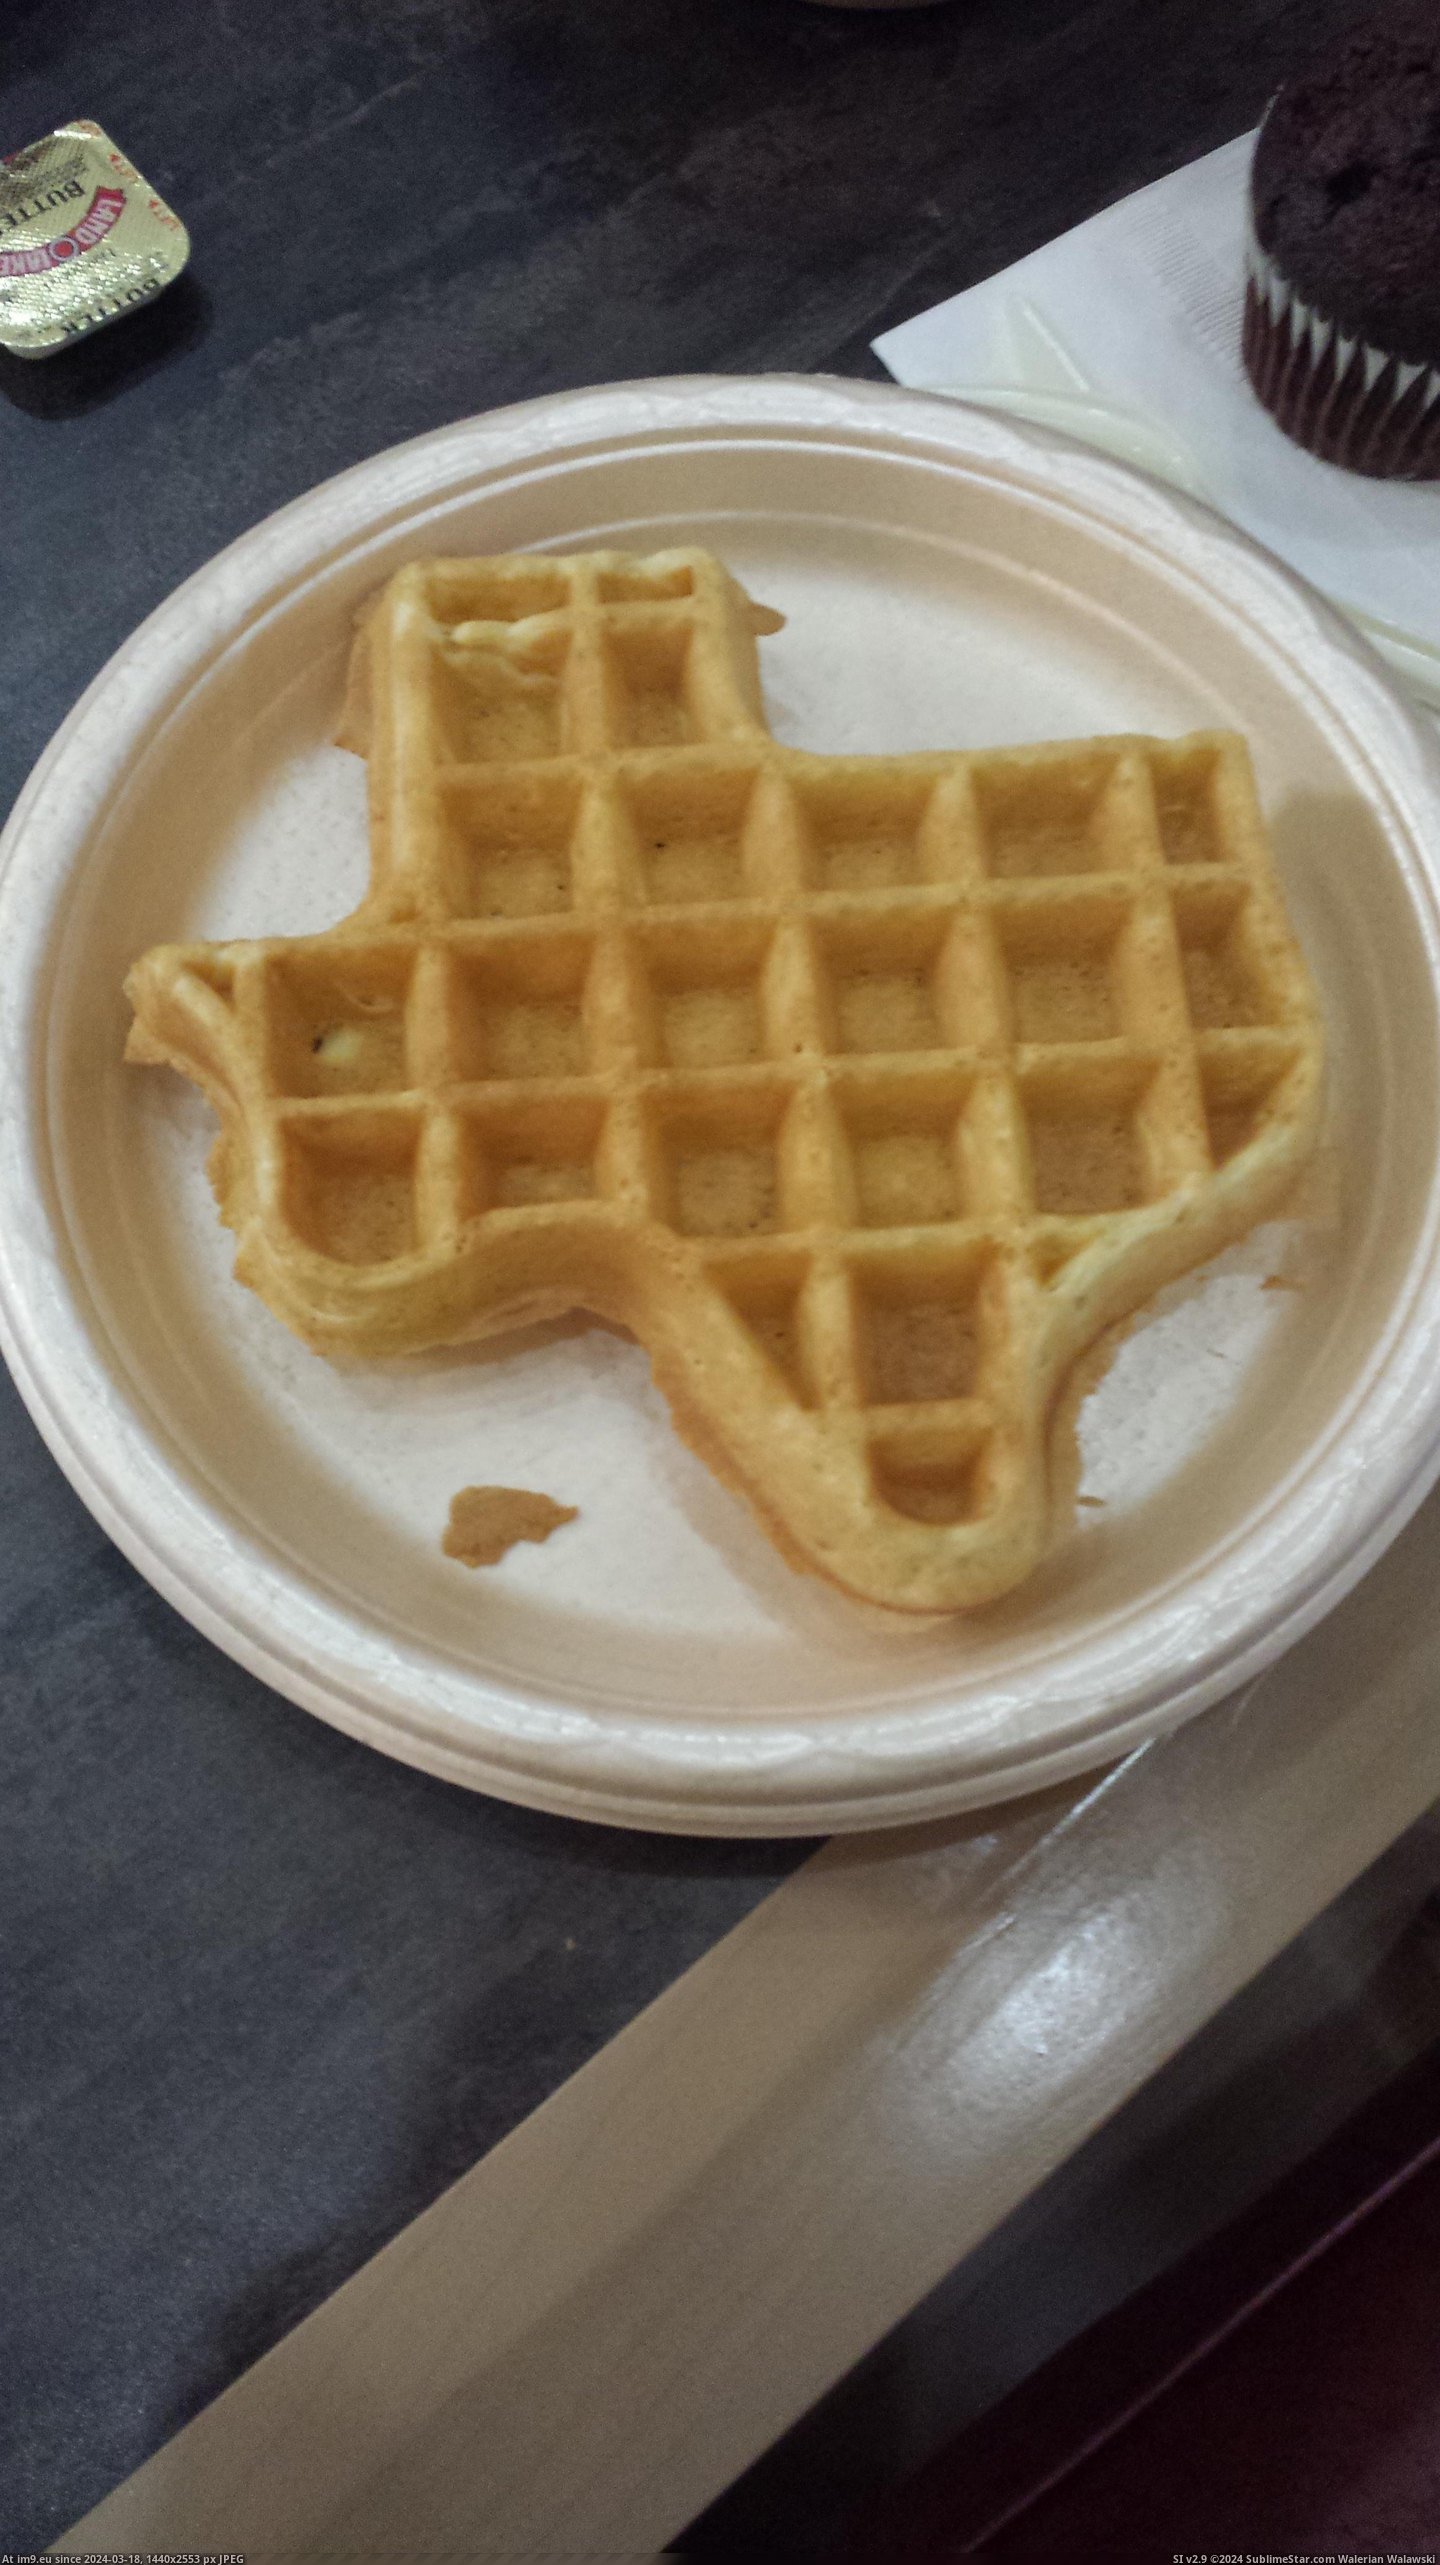 #Hotel #Texas #Staying #Kansas #Serves #Shaped #Waffles [Mildlyinteresting] The hotel I'm staying at in Kansas serves waffles shaped like Texas Pic. (Image of album My r/MILDLYINTERESTING favs))